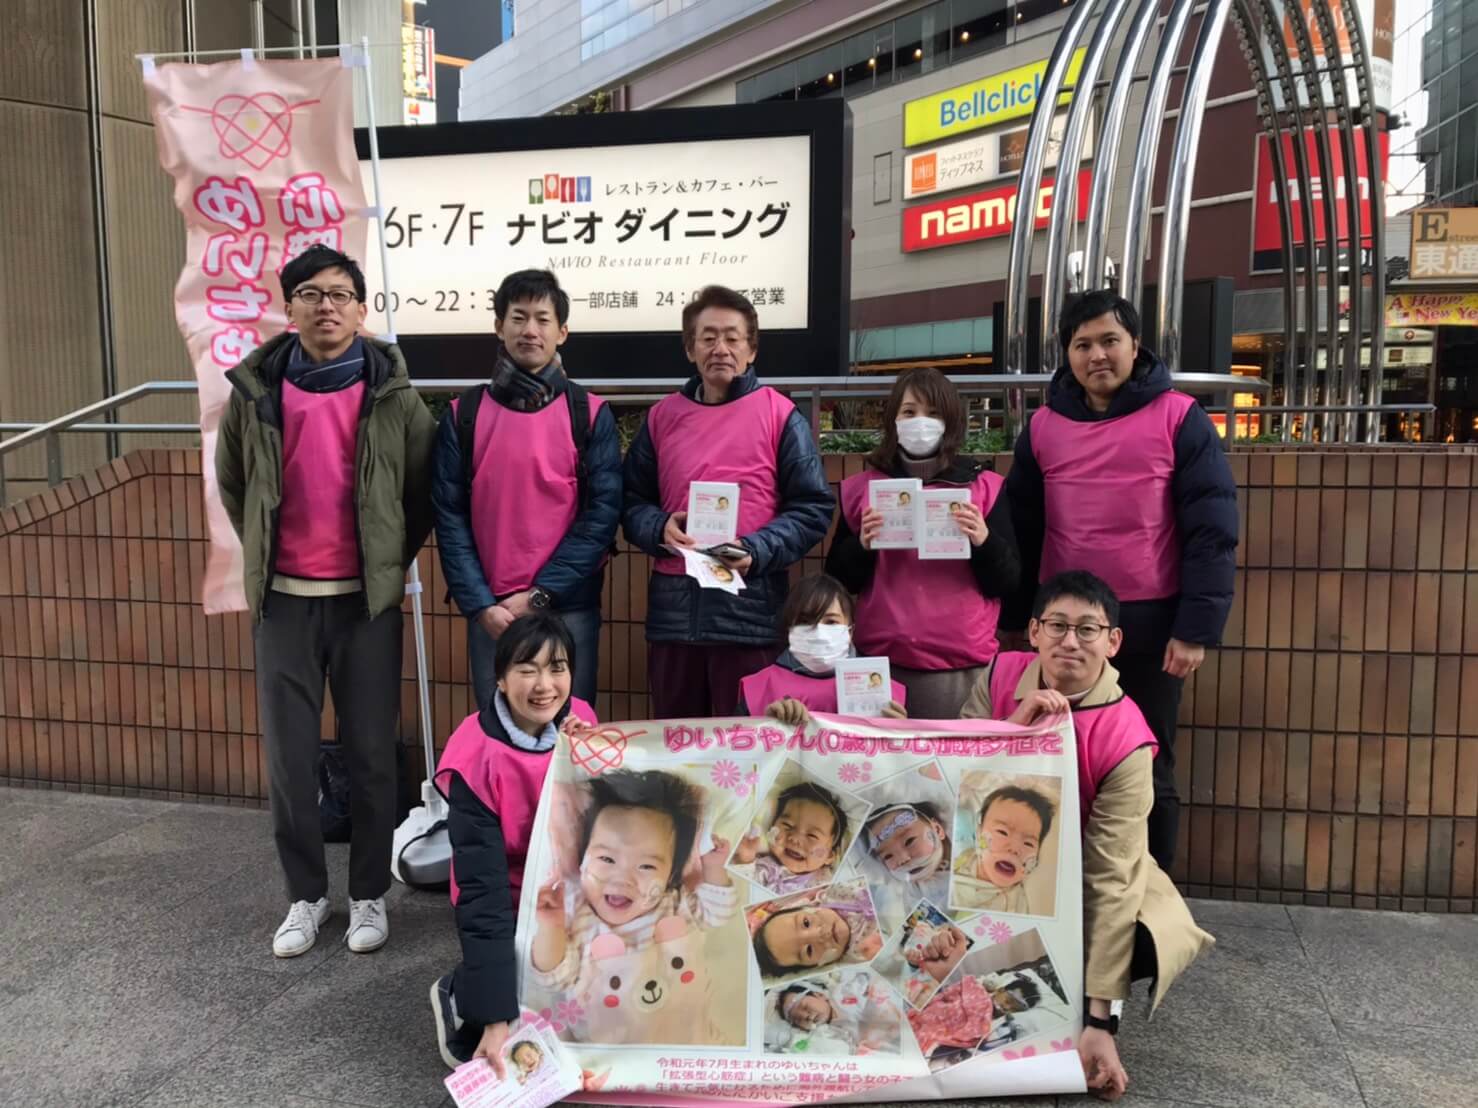 大阪駅付近で募金活動を行いました。